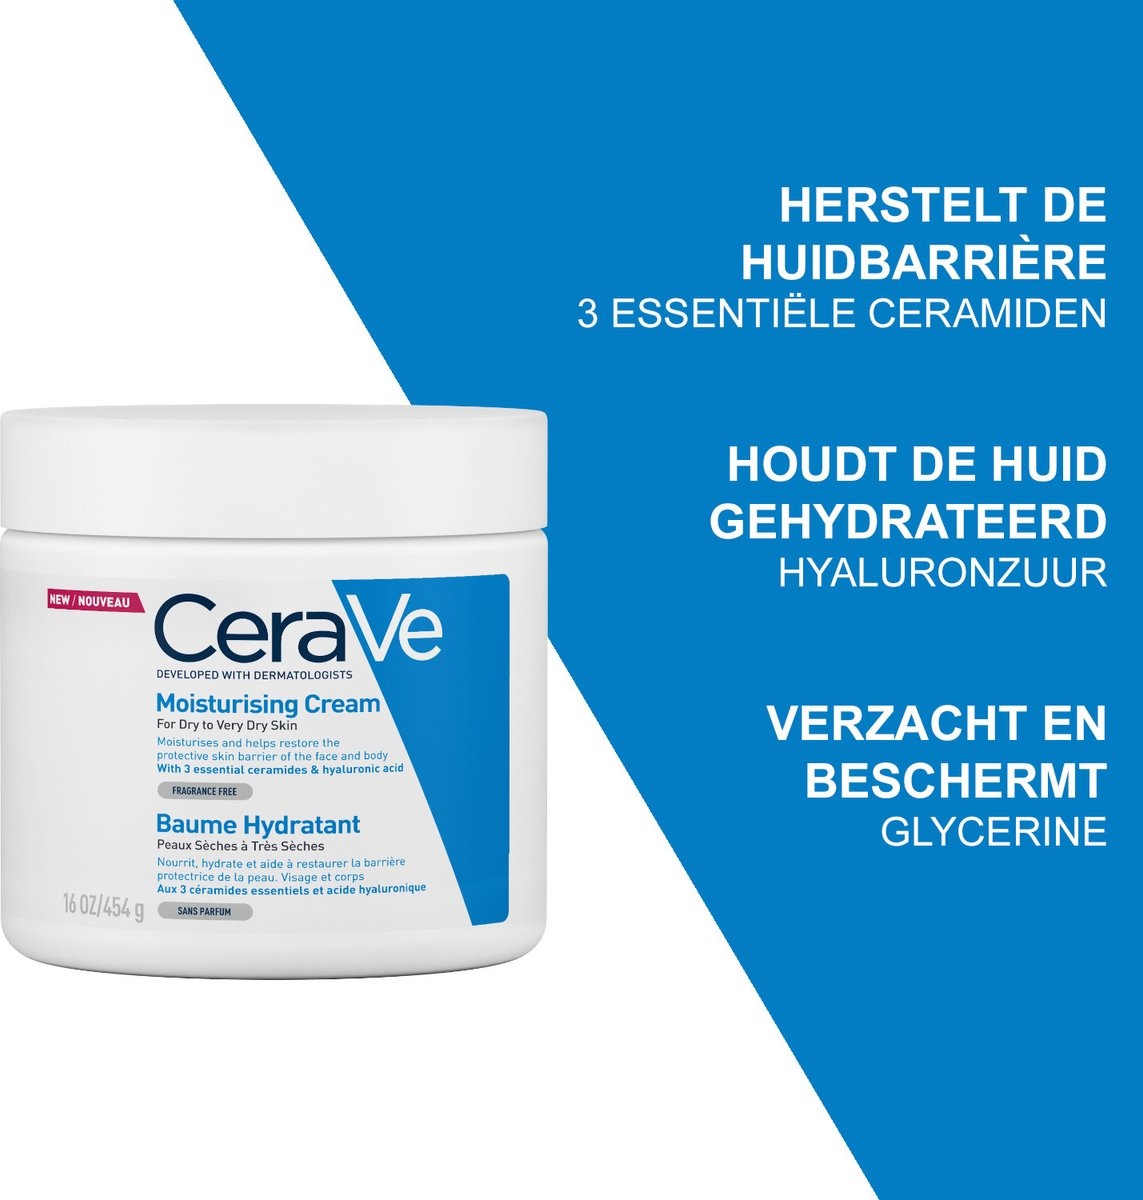 CeraVe - Feuchtigkeitscreme - für trockene bis sehr trockene Haut - 454g